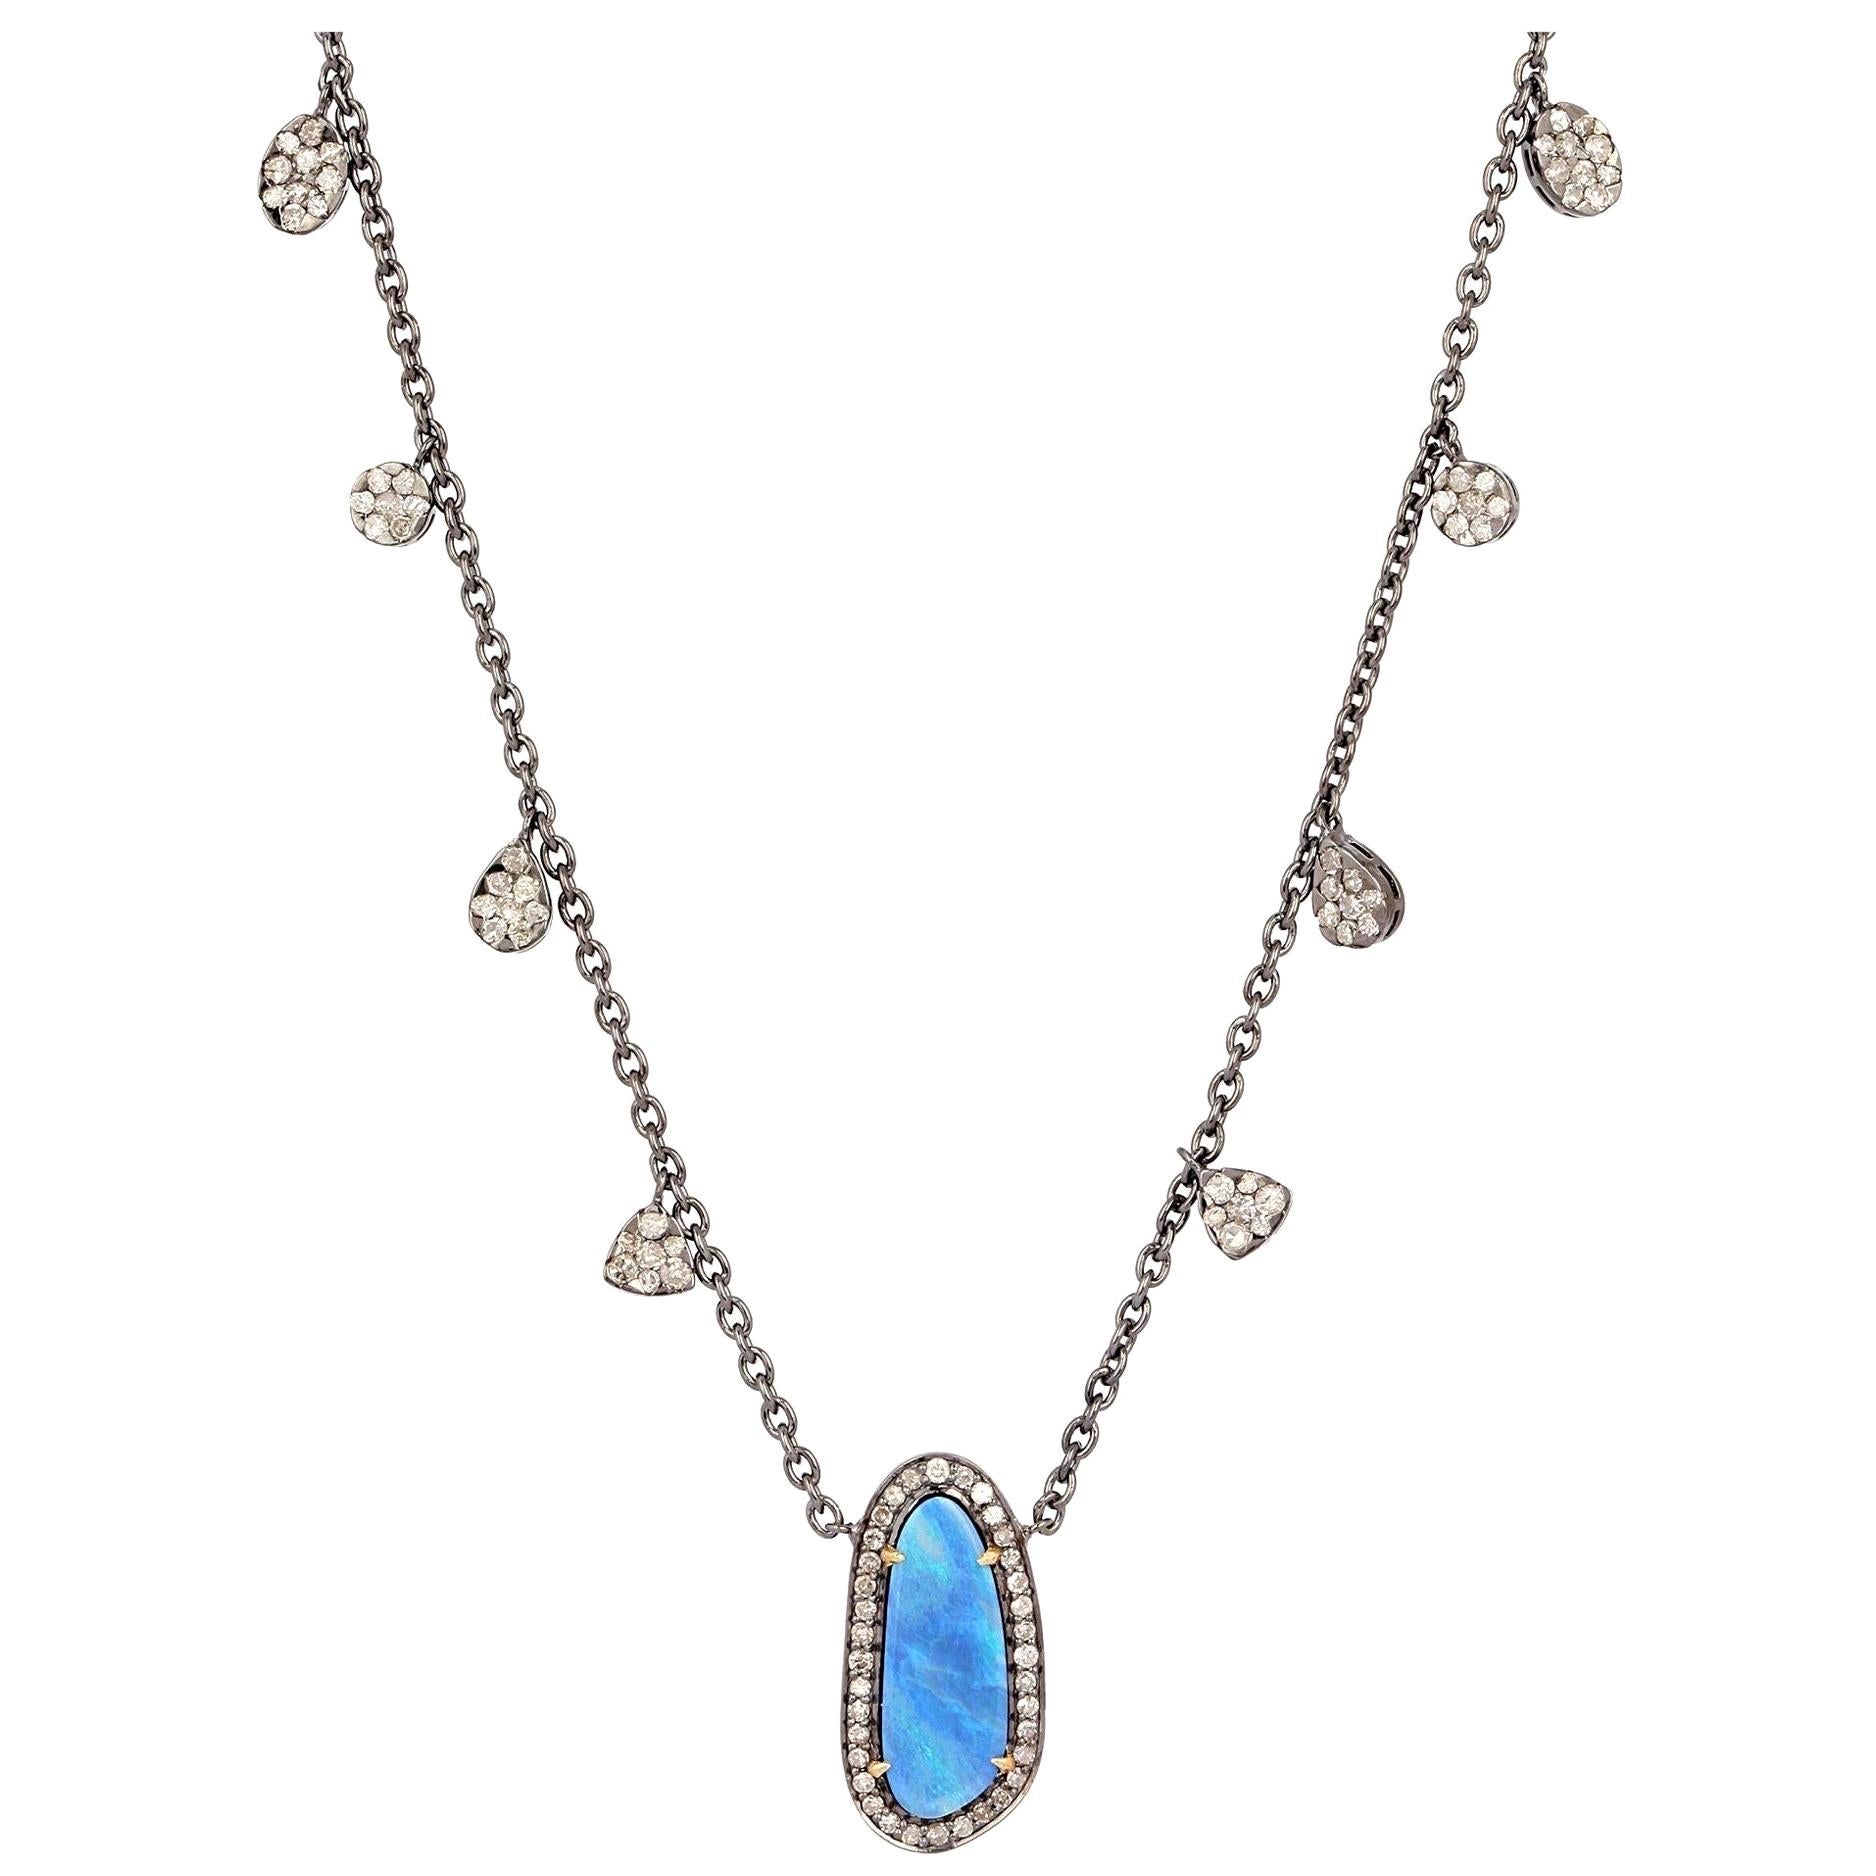 Opal Diamond Pendant Necklace